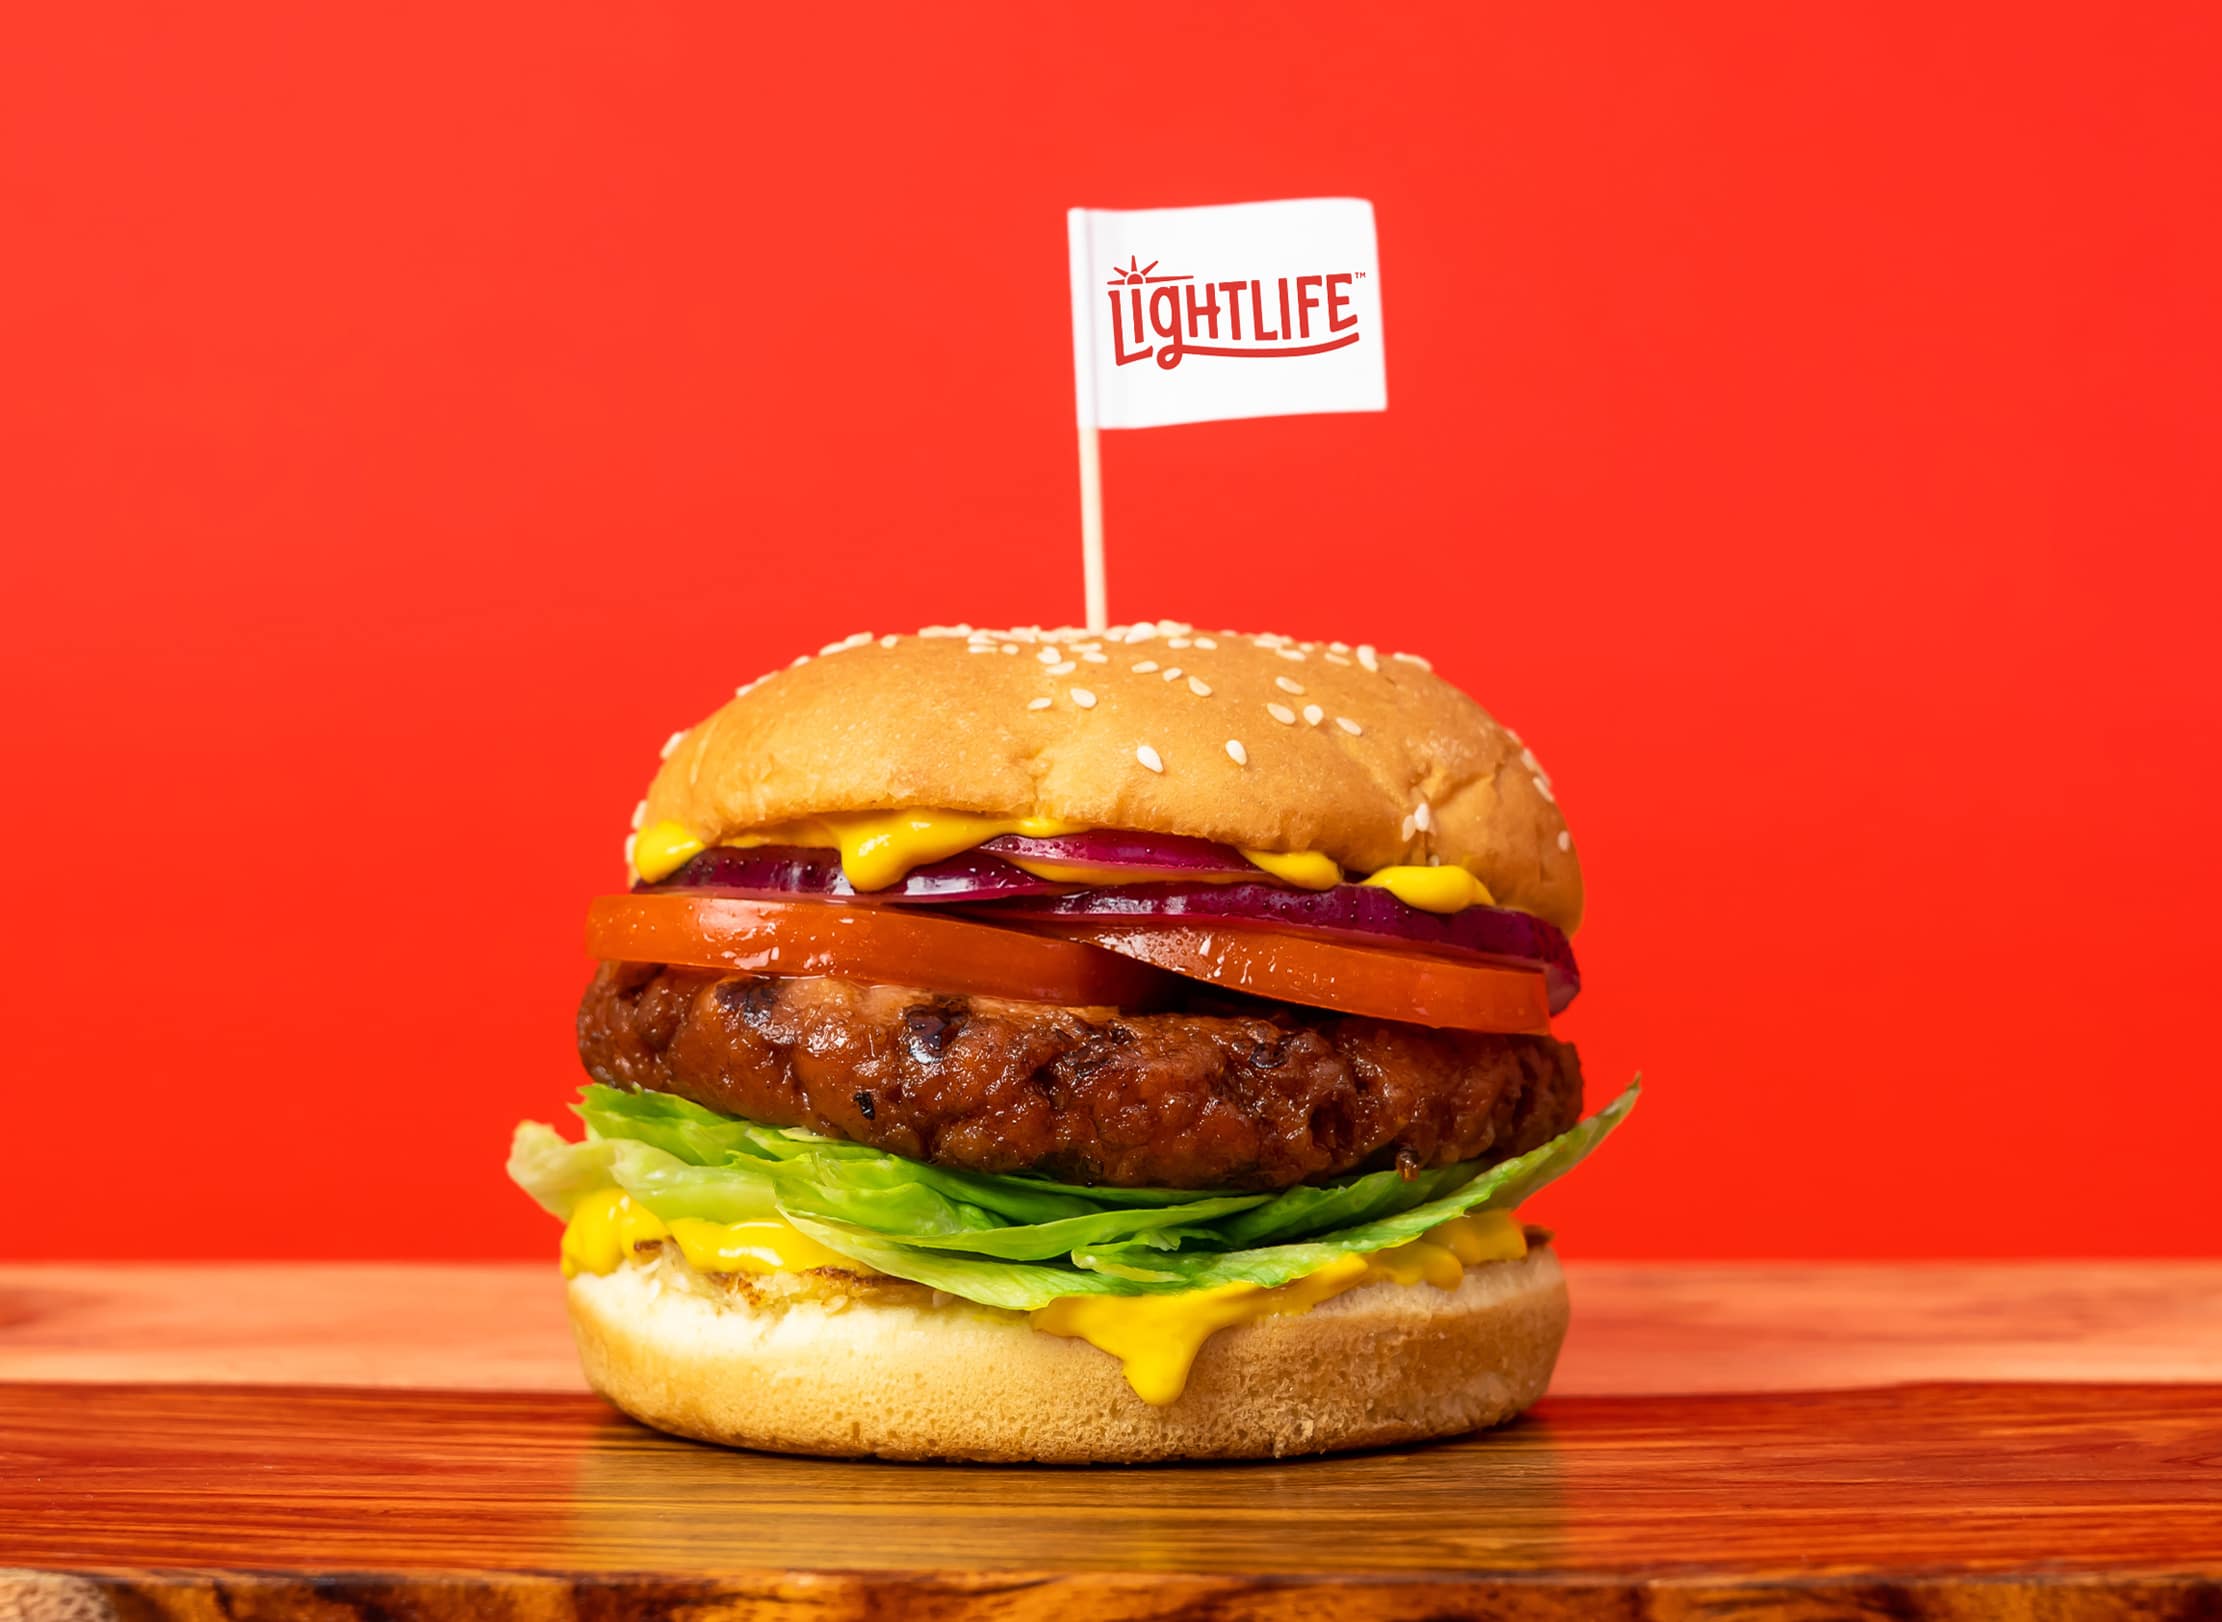 Lightlife burger product shot